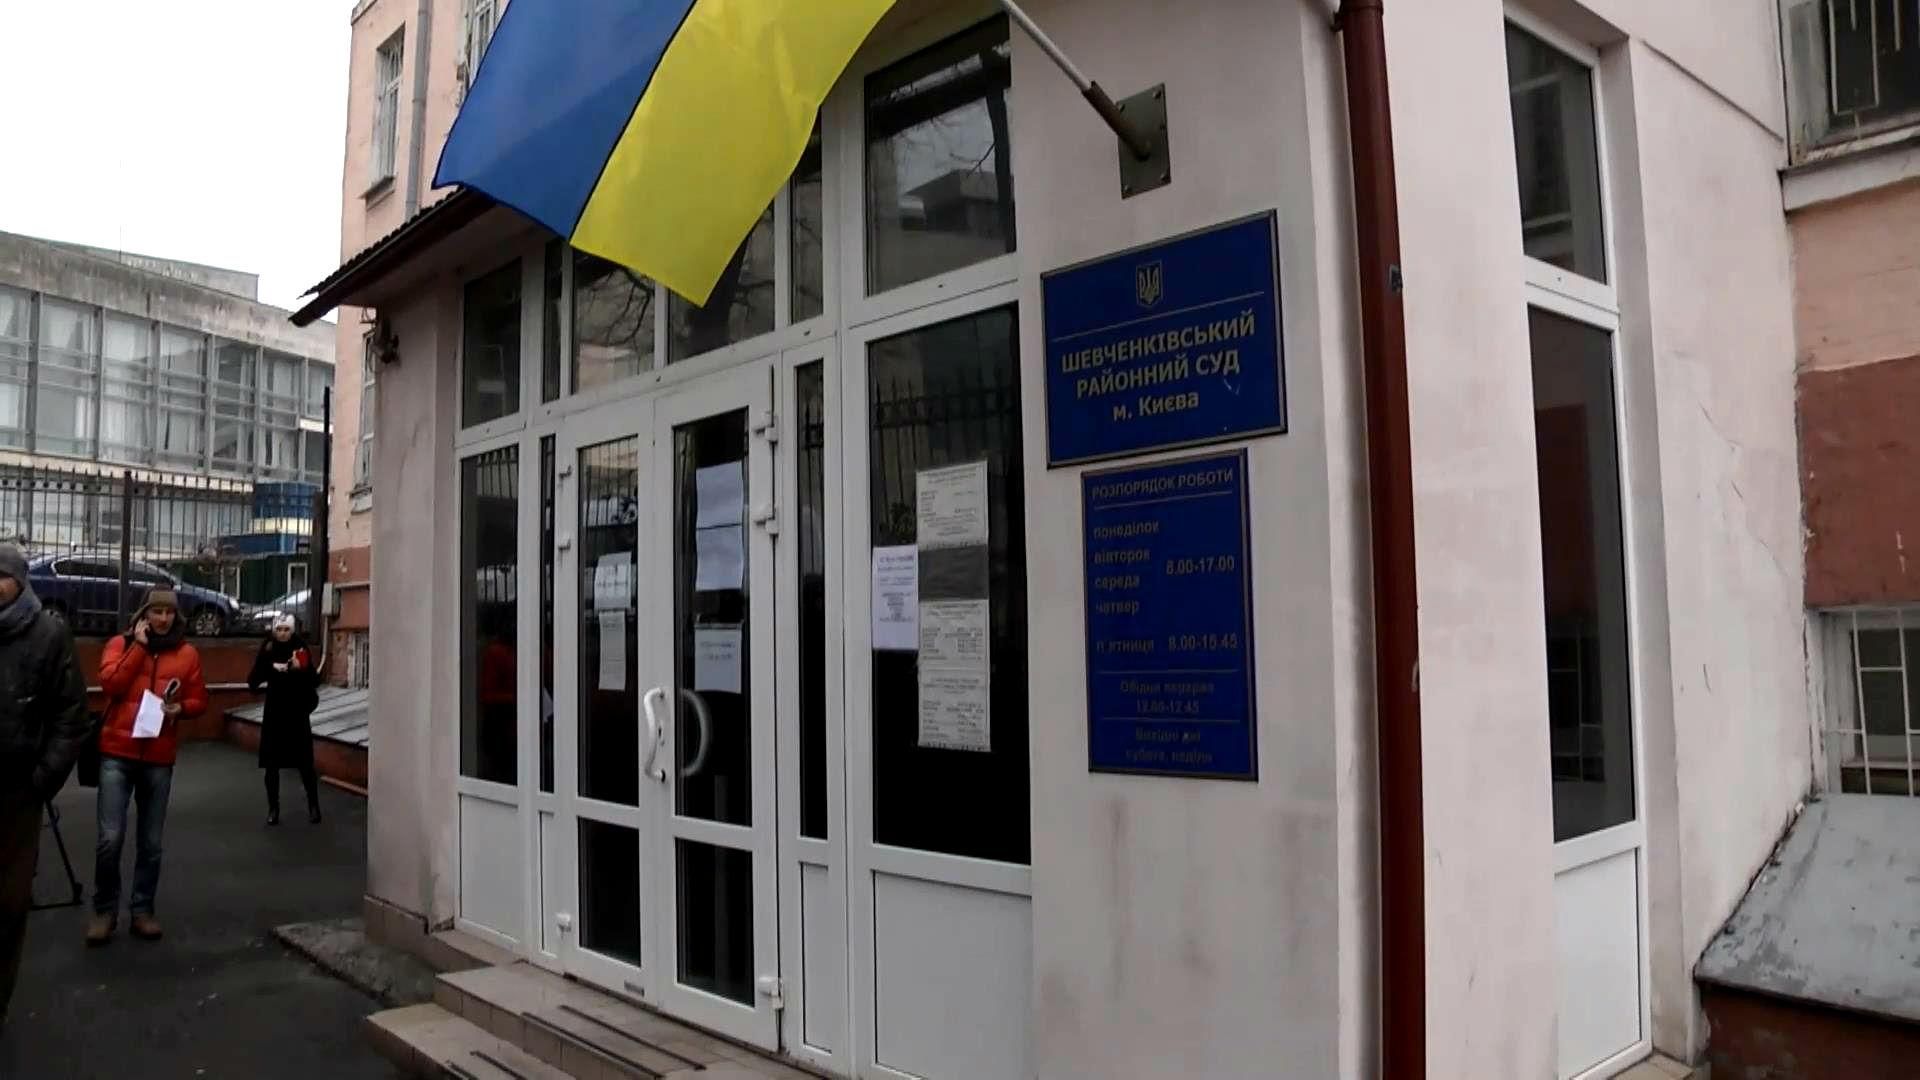 Розгляд справи Попова суд призначив на 23 березня